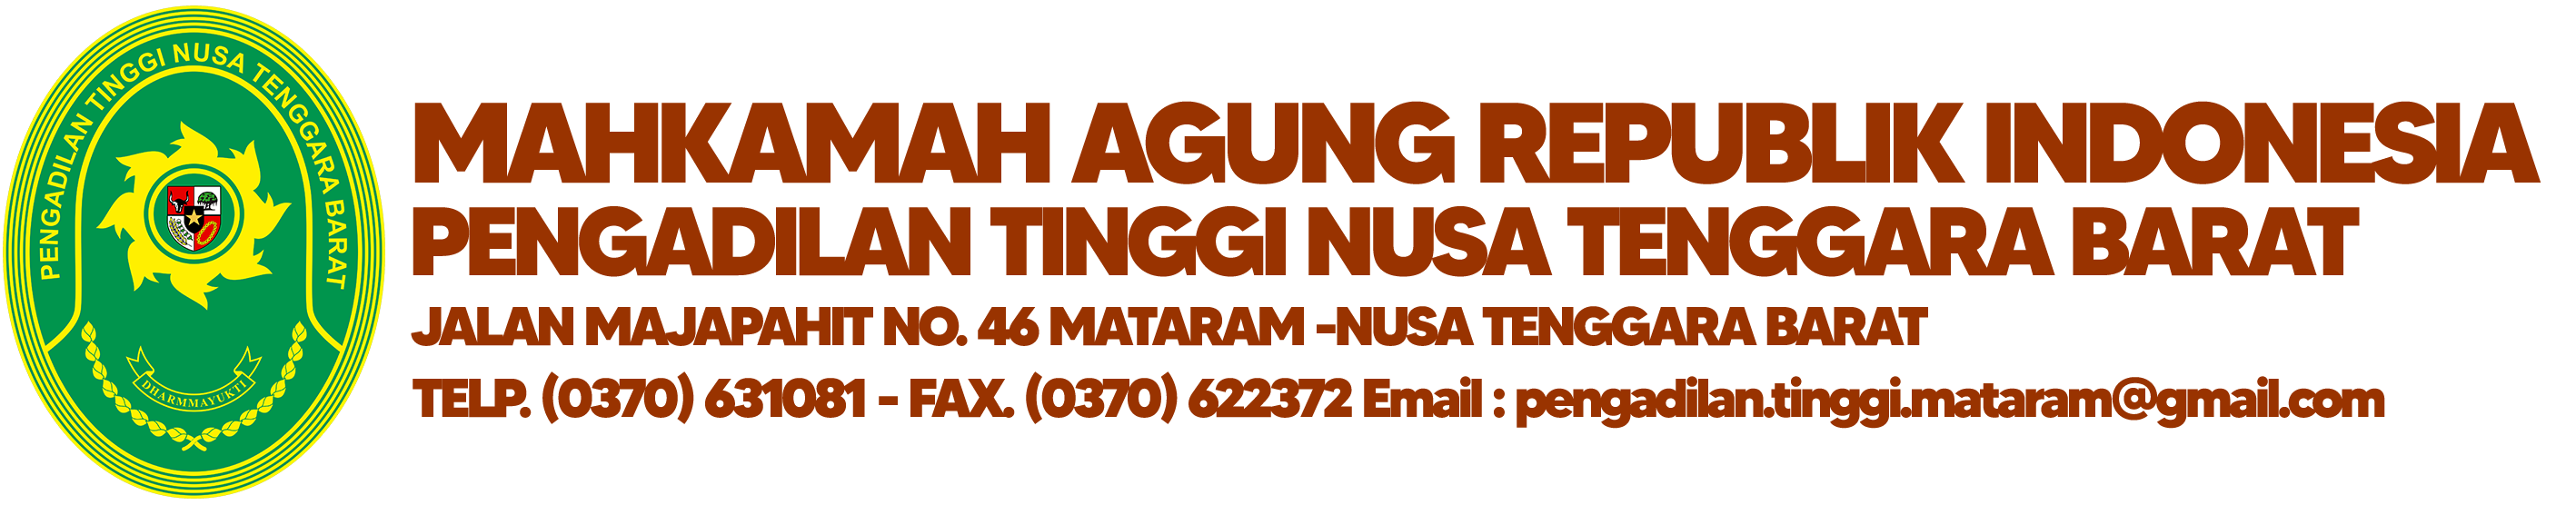 Logo PT Nusa Tenggara Barat